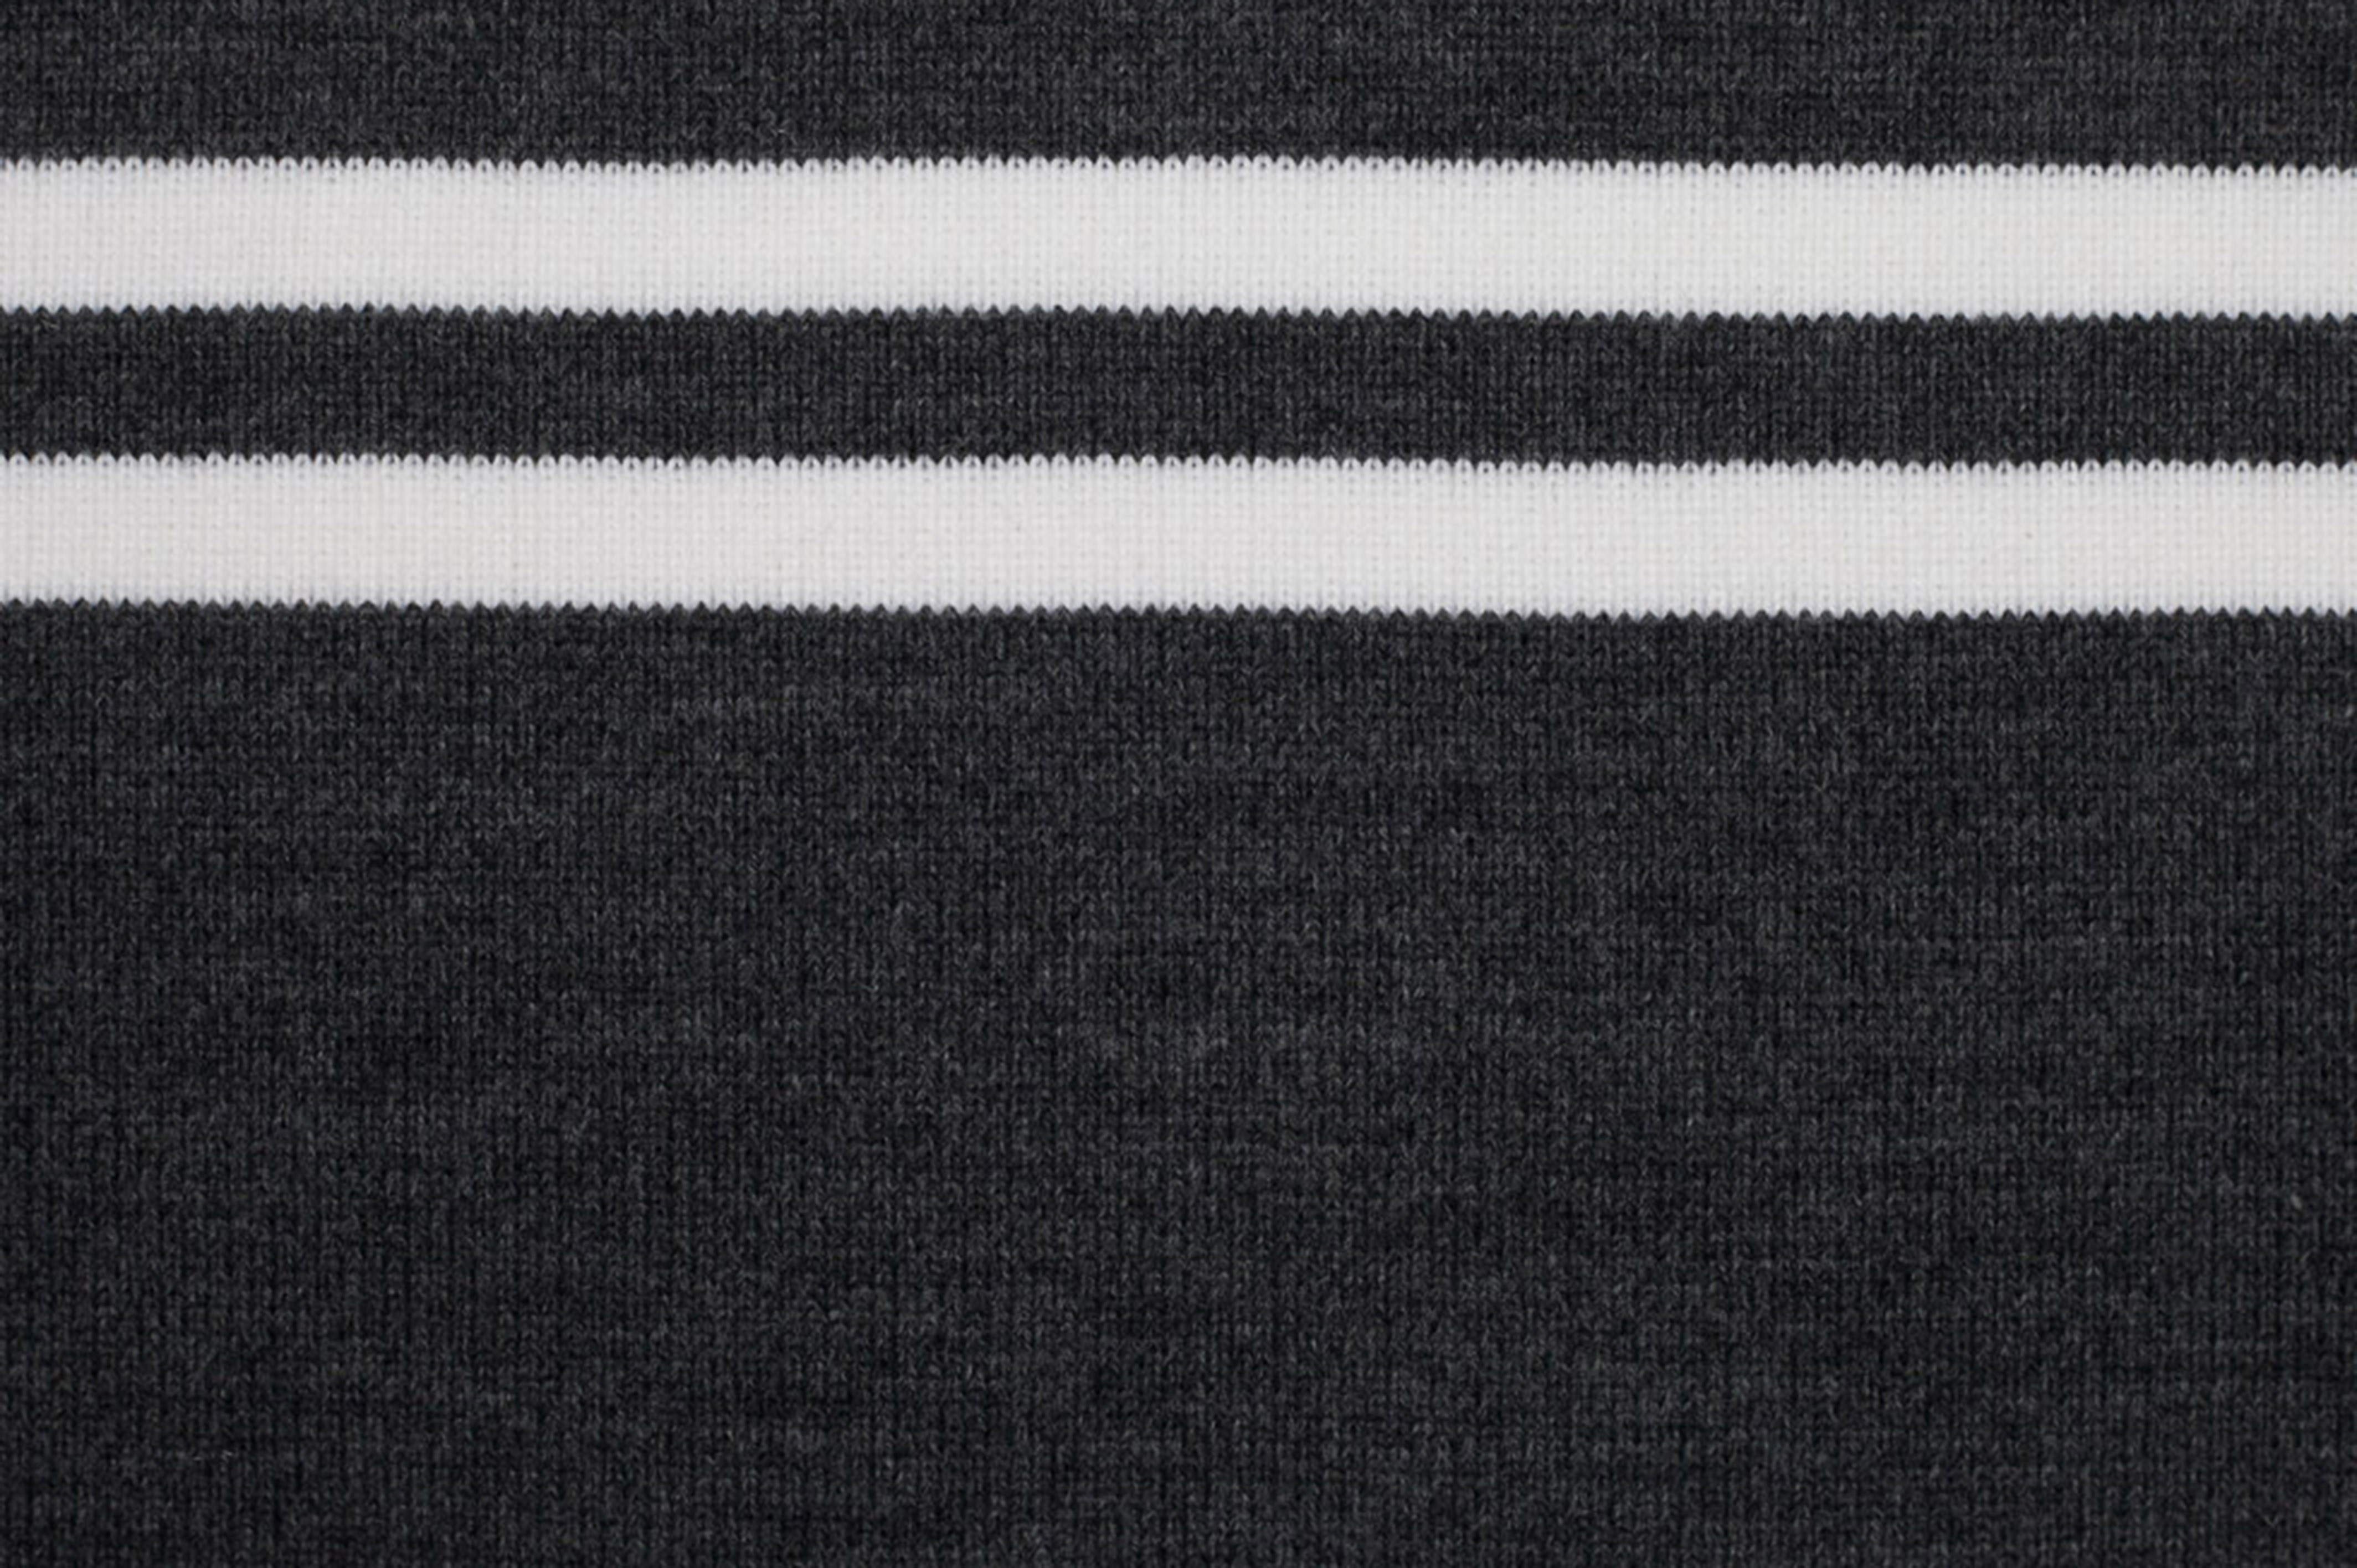 Black Stretch Nylon 6.5 x 40 Rib Knit Trim - Rib Knit Trims - Trims &  Chains - Trims